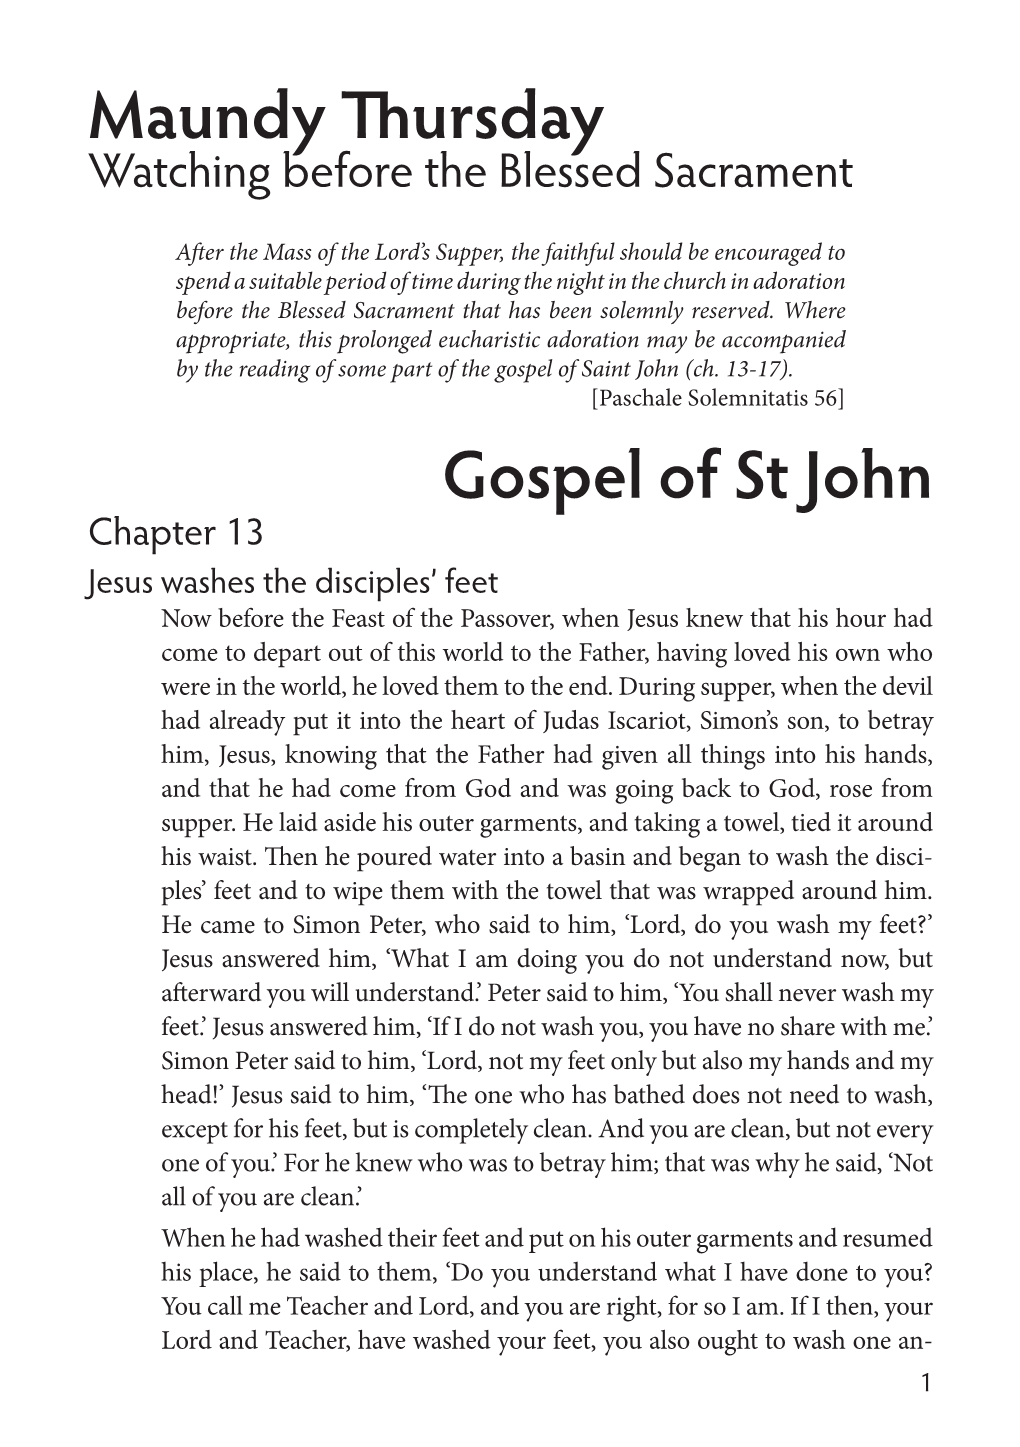 Maundy Thursday Gospel of St John